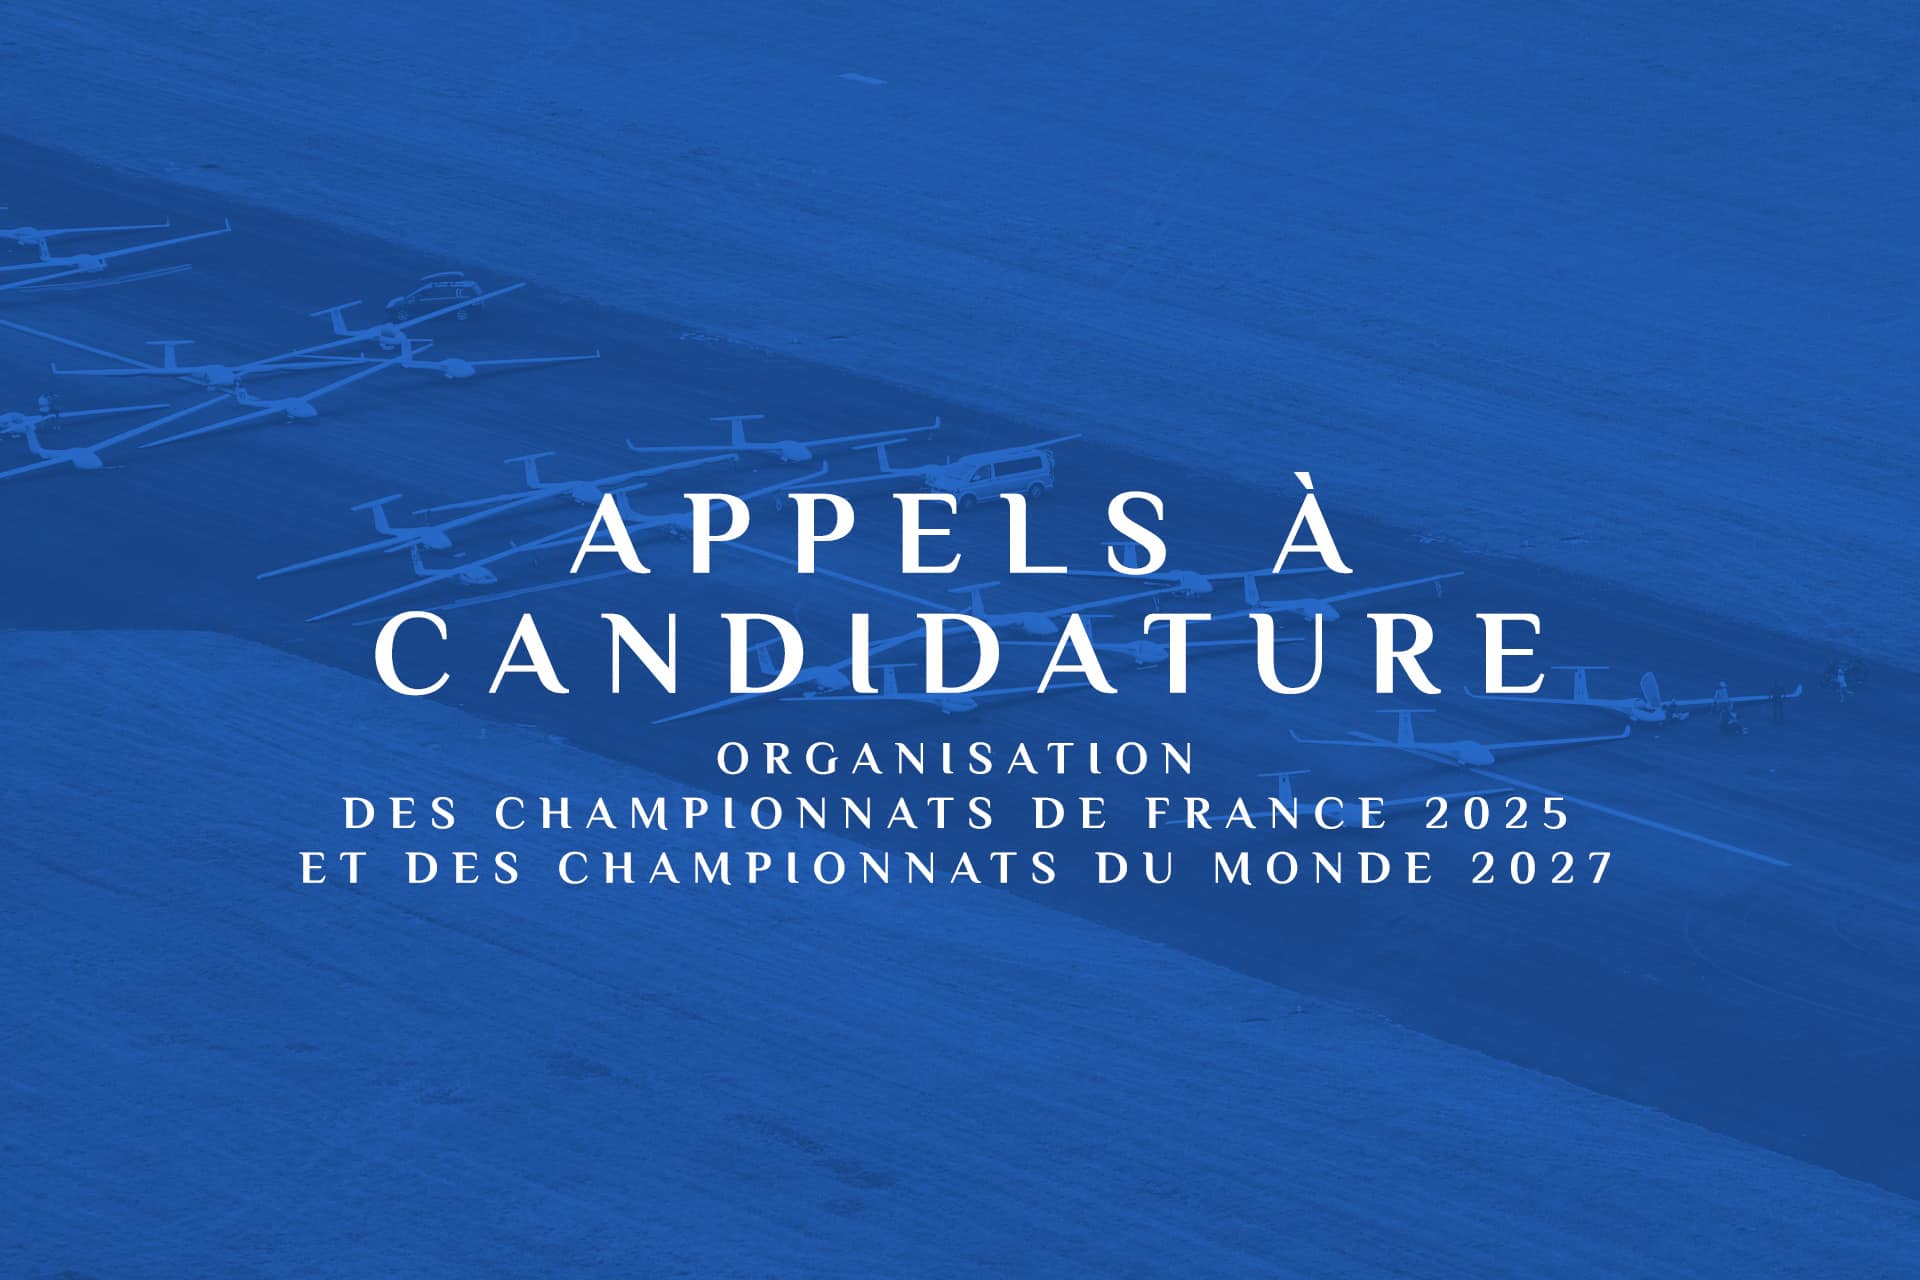 Appel à candidature : Organisation Championnats de France 2025